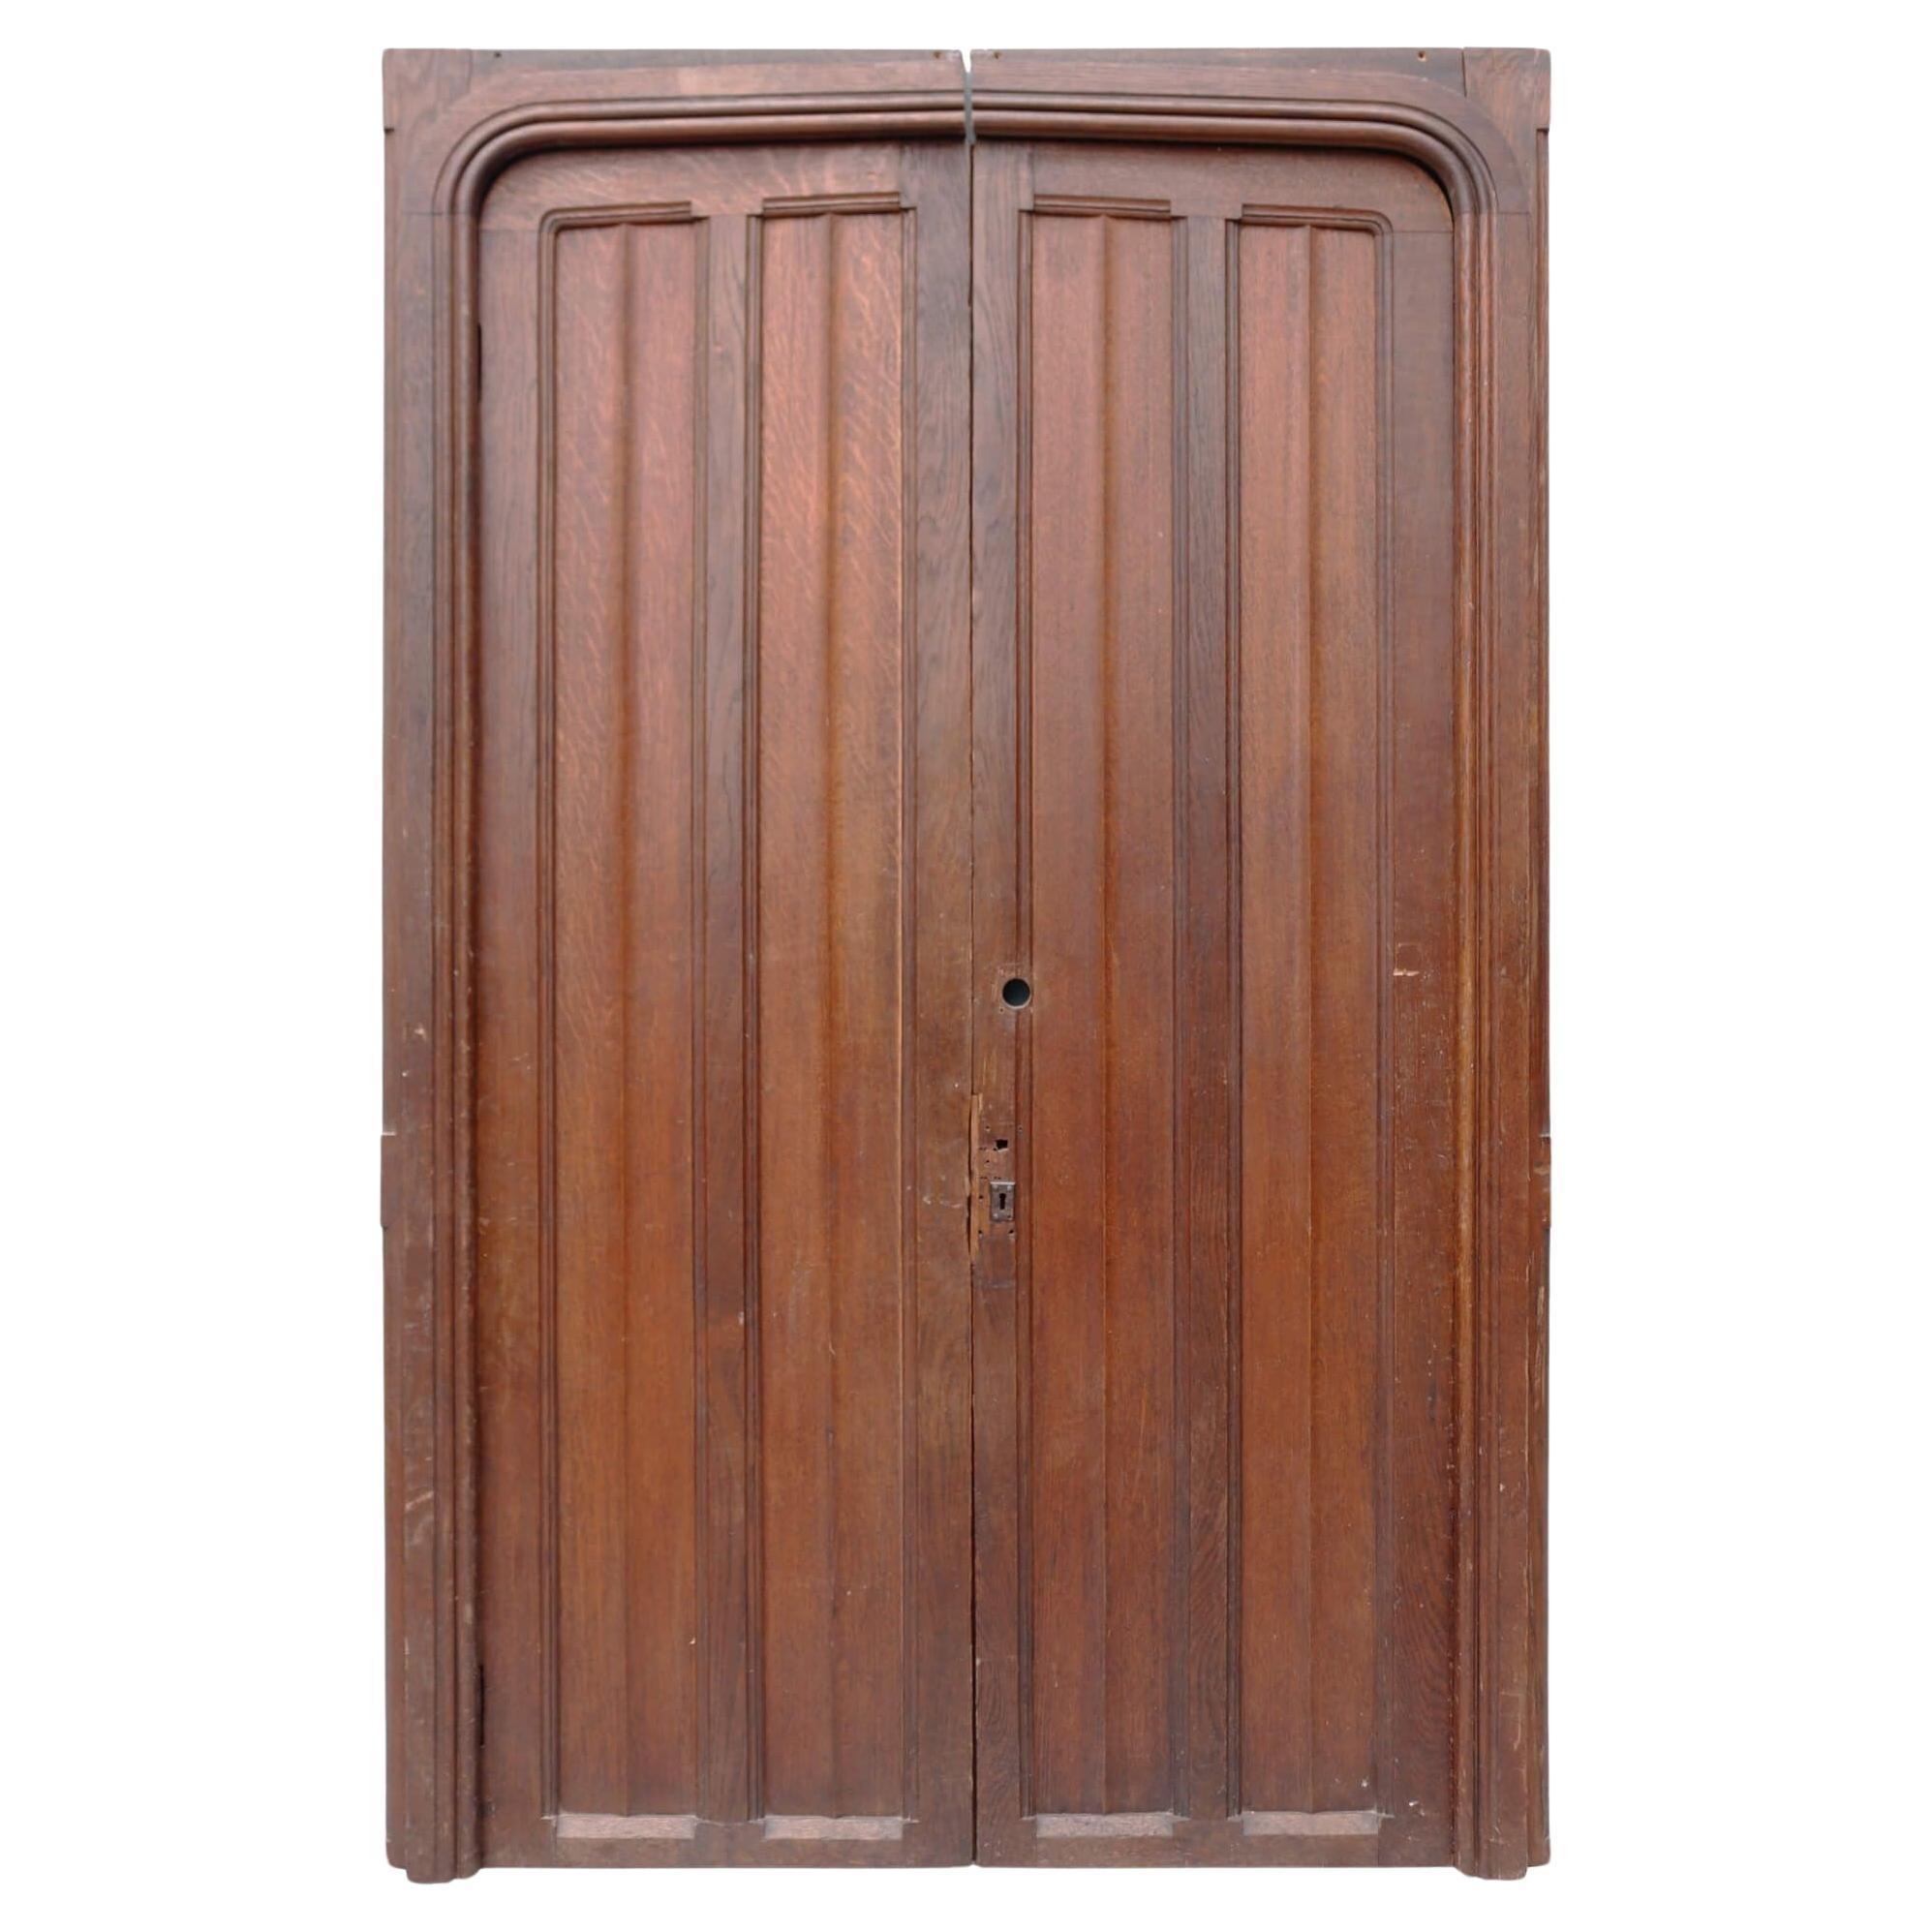 Set of Antique Edwardian Oak Doors with Frame